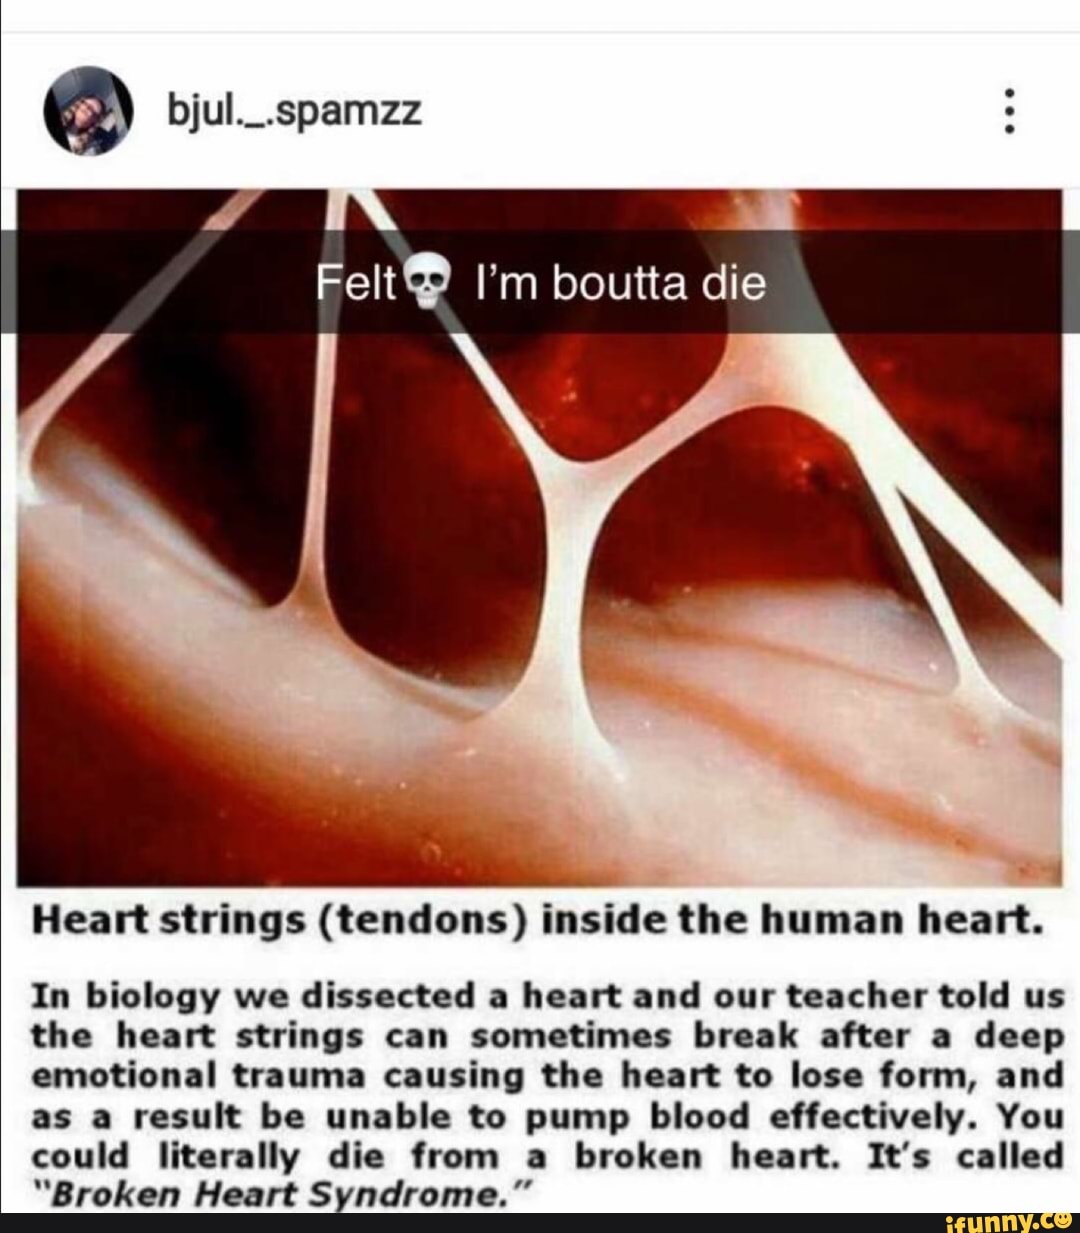 Few I’m boutta die -' 1 Heart strings (tendons) inside the human heart